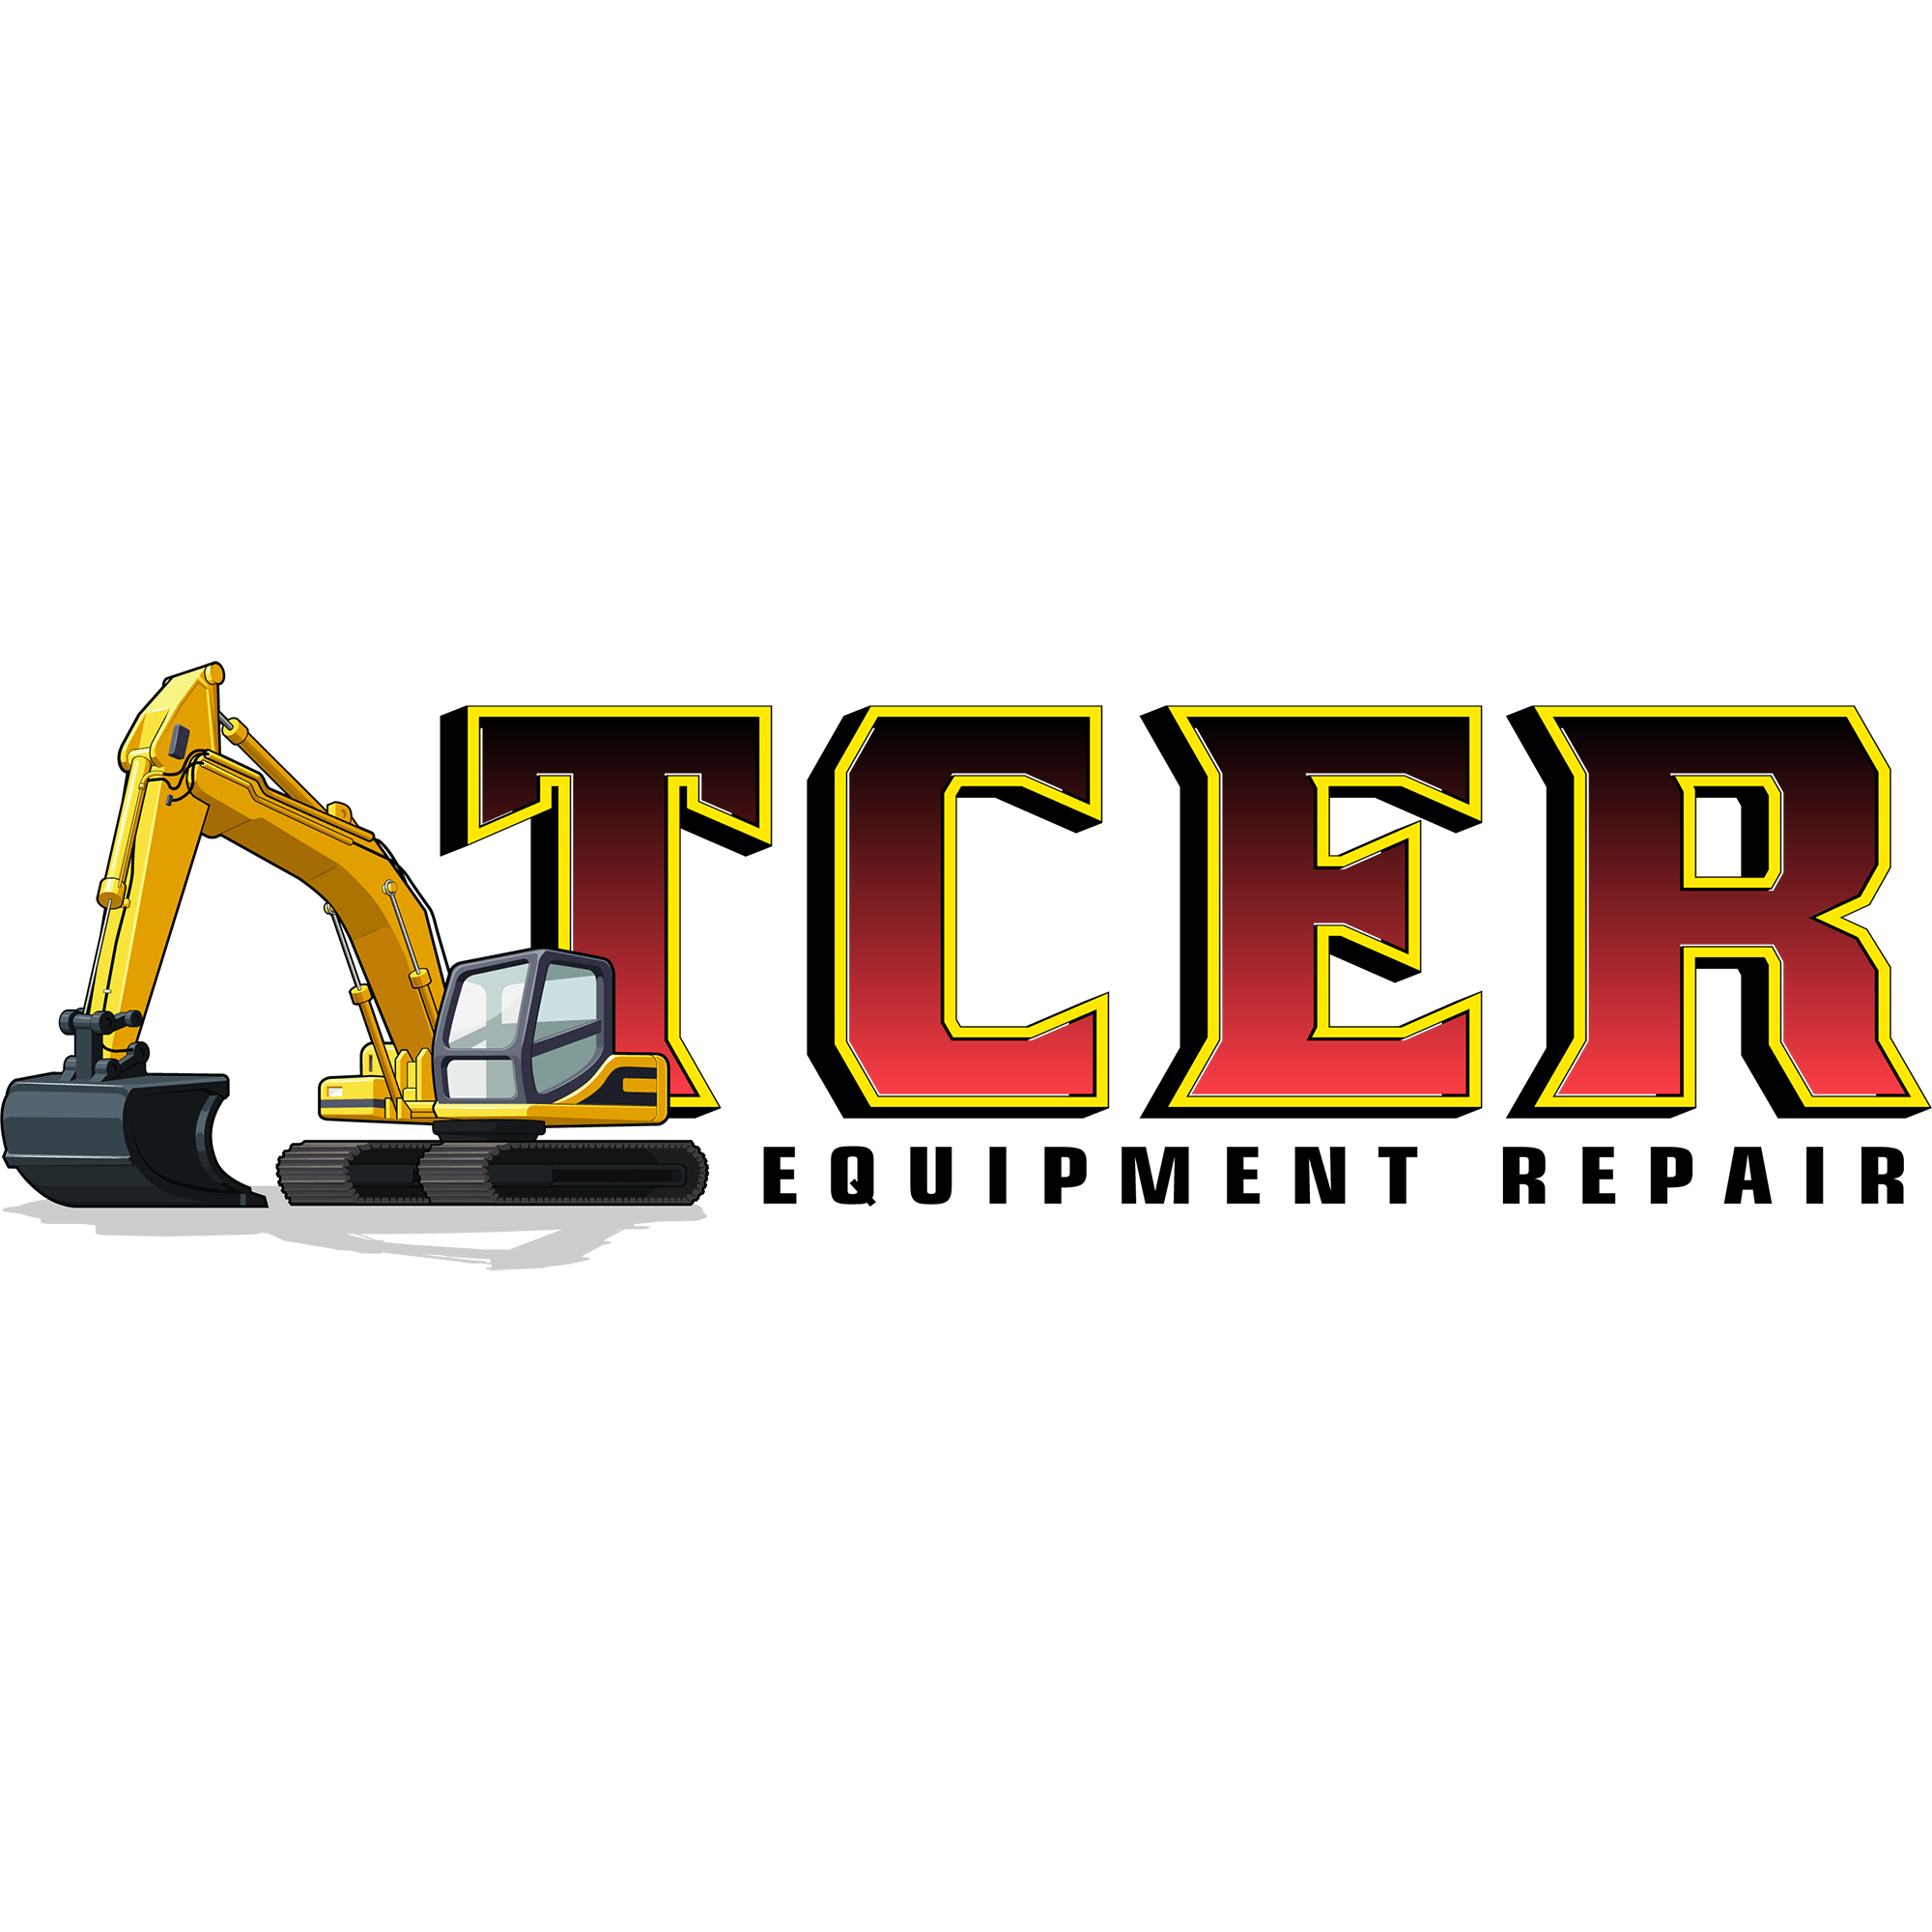 Logo Design - TCER